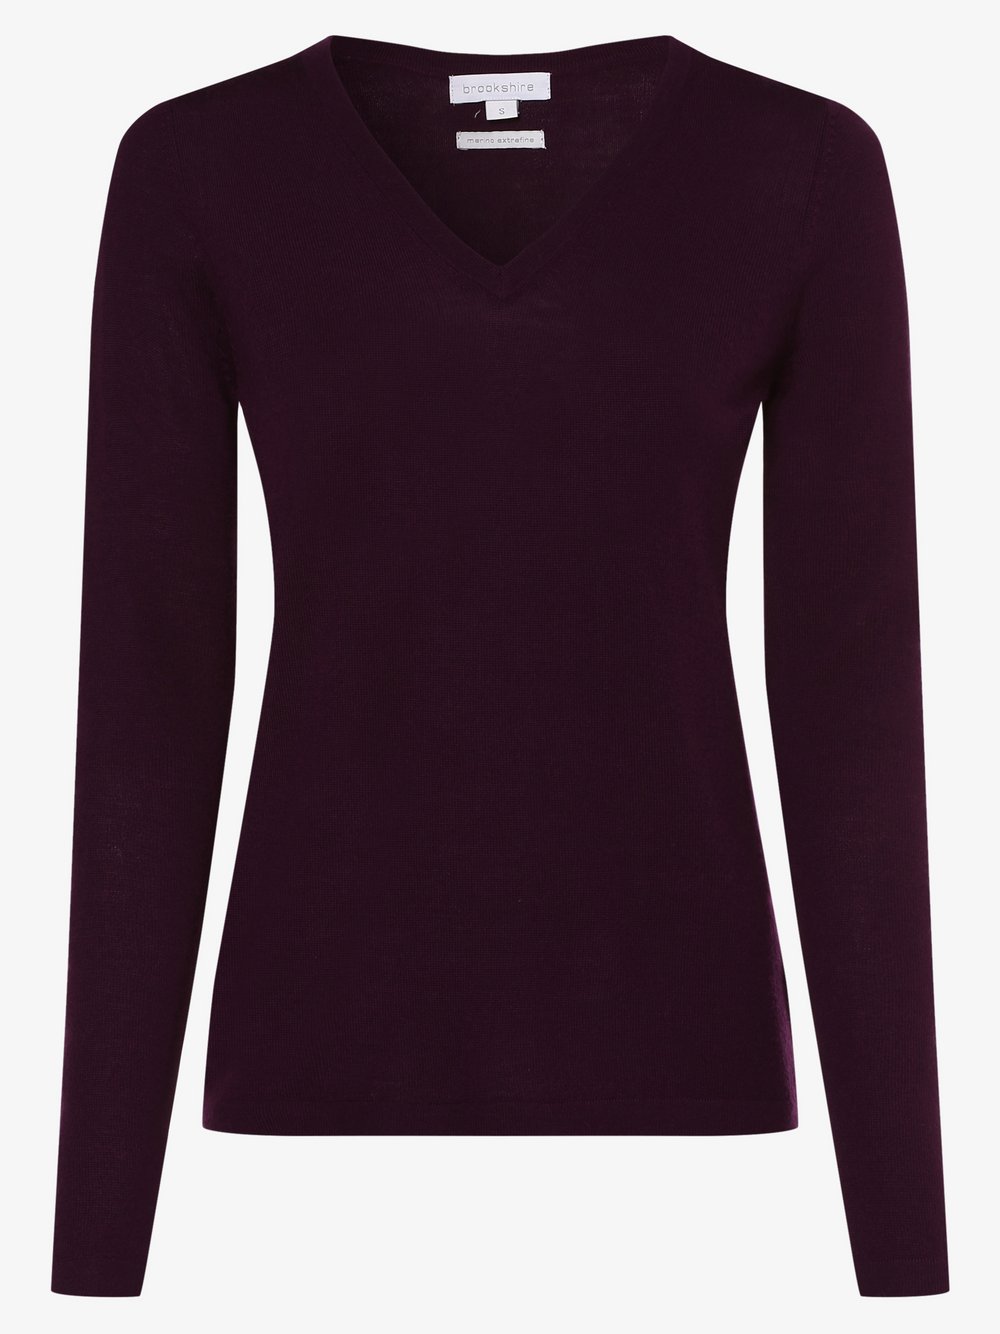 Brookshire - Damski sweter z wełny merino, czerwony